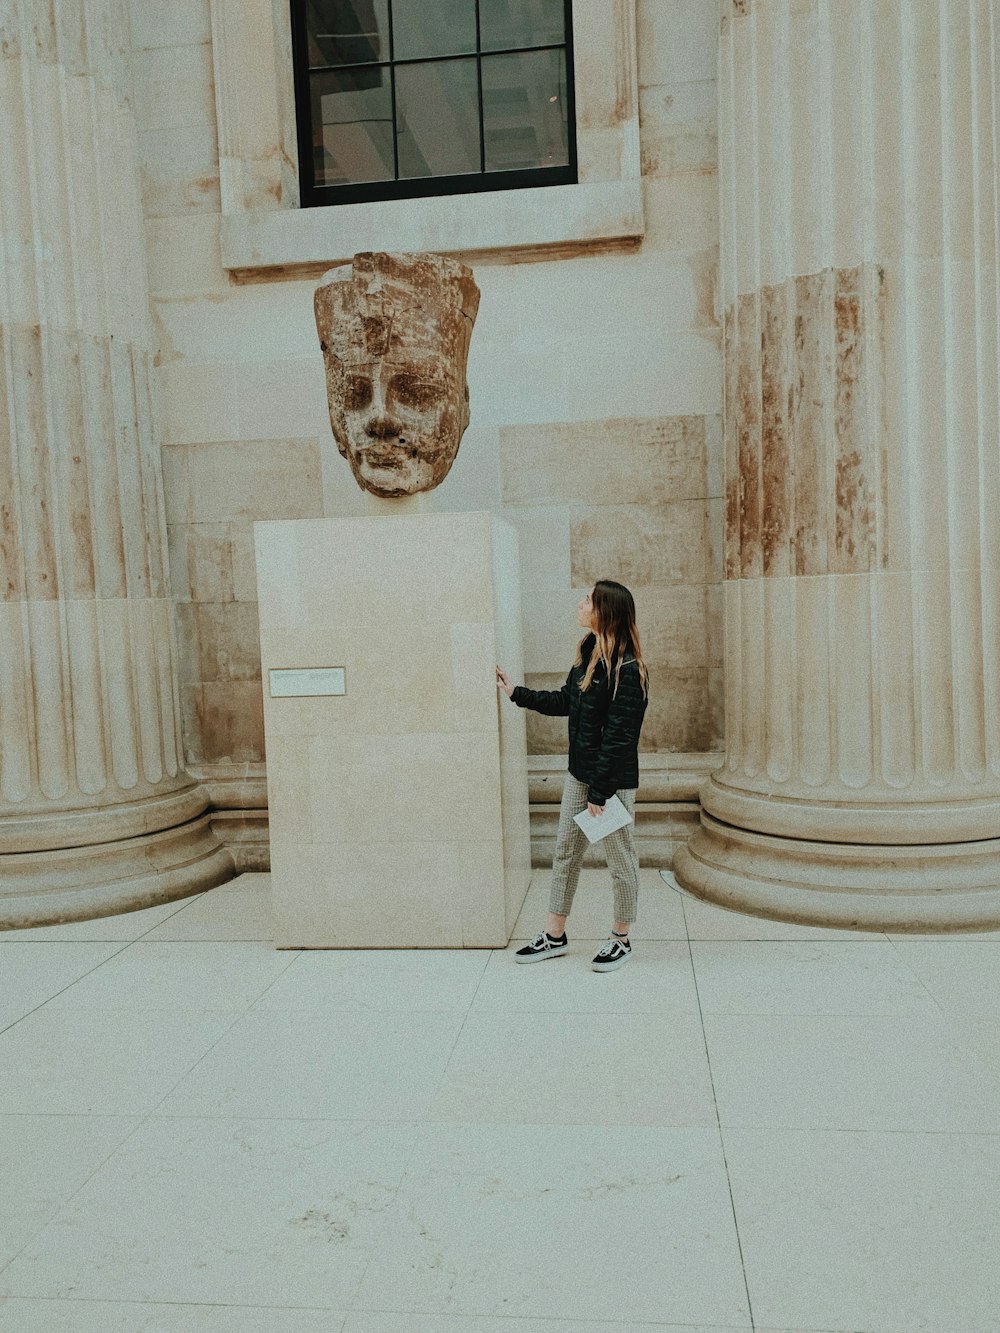 조각품 근처에 서 있는 여자